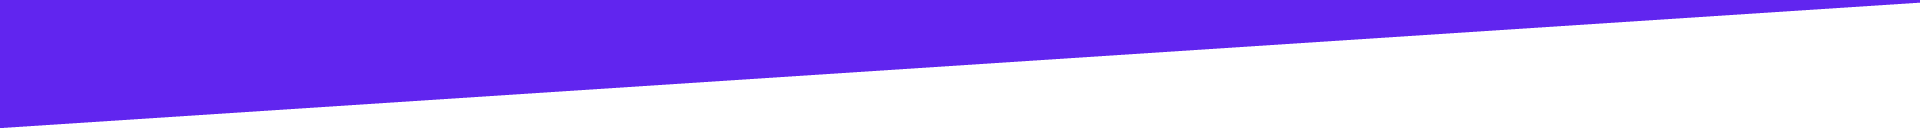 formasarthe-forme-violet